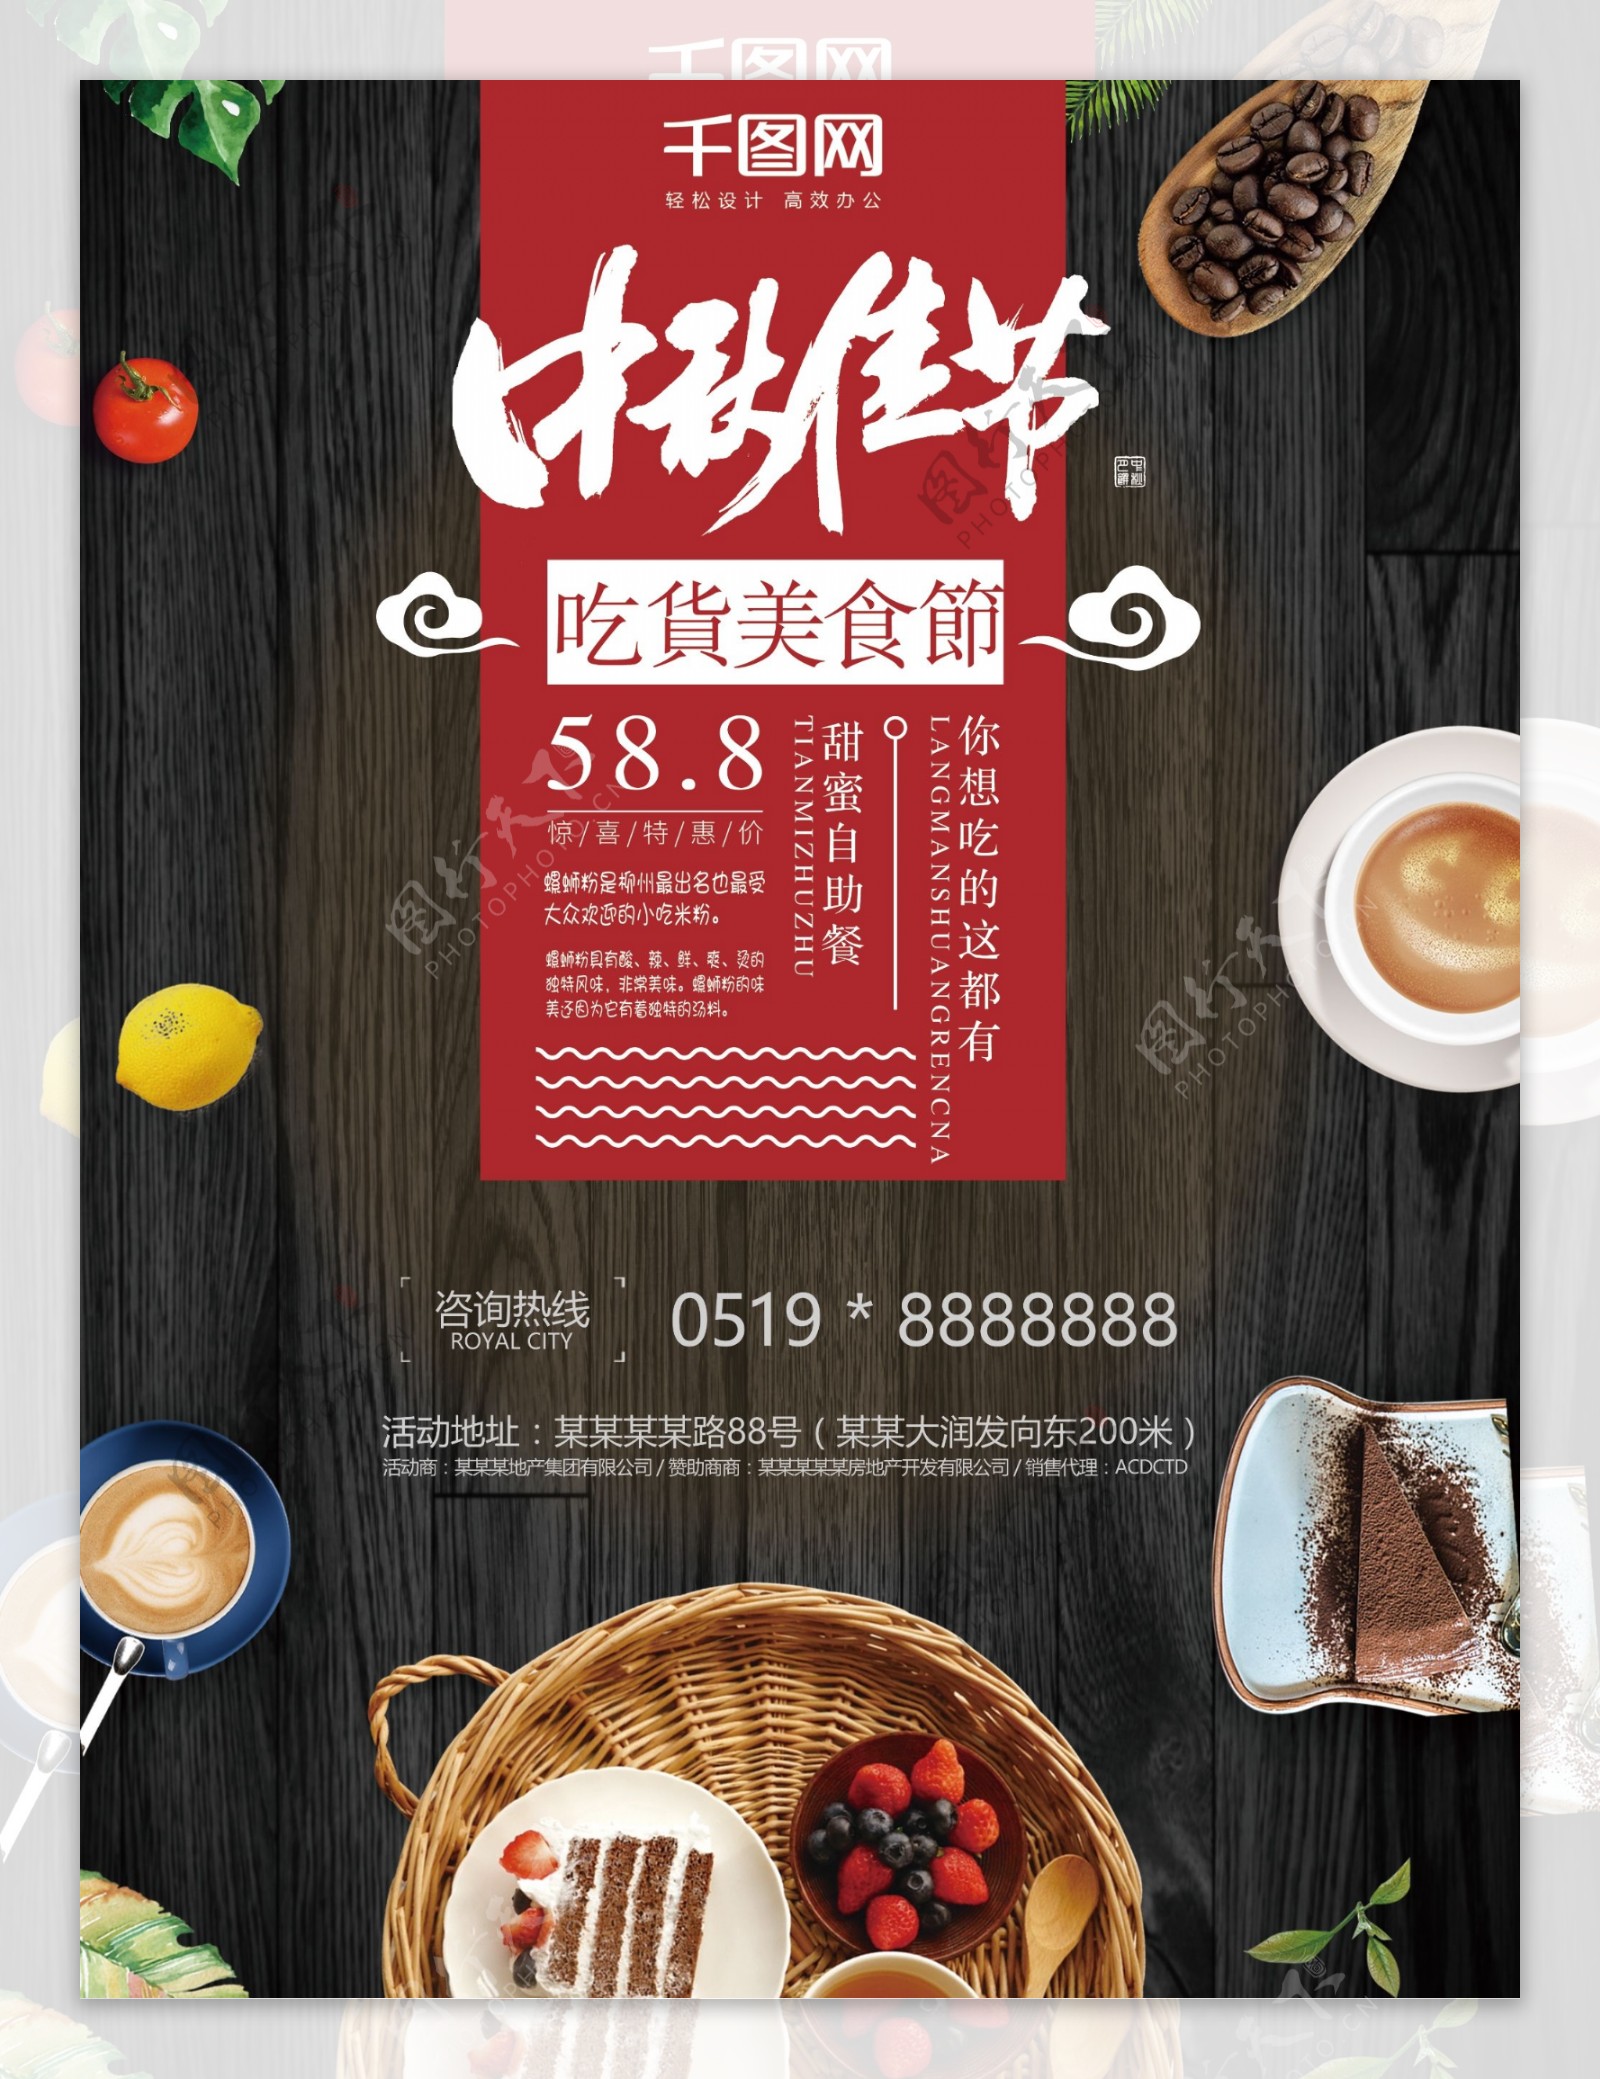 经典中秋节甜品美食促销海报设计